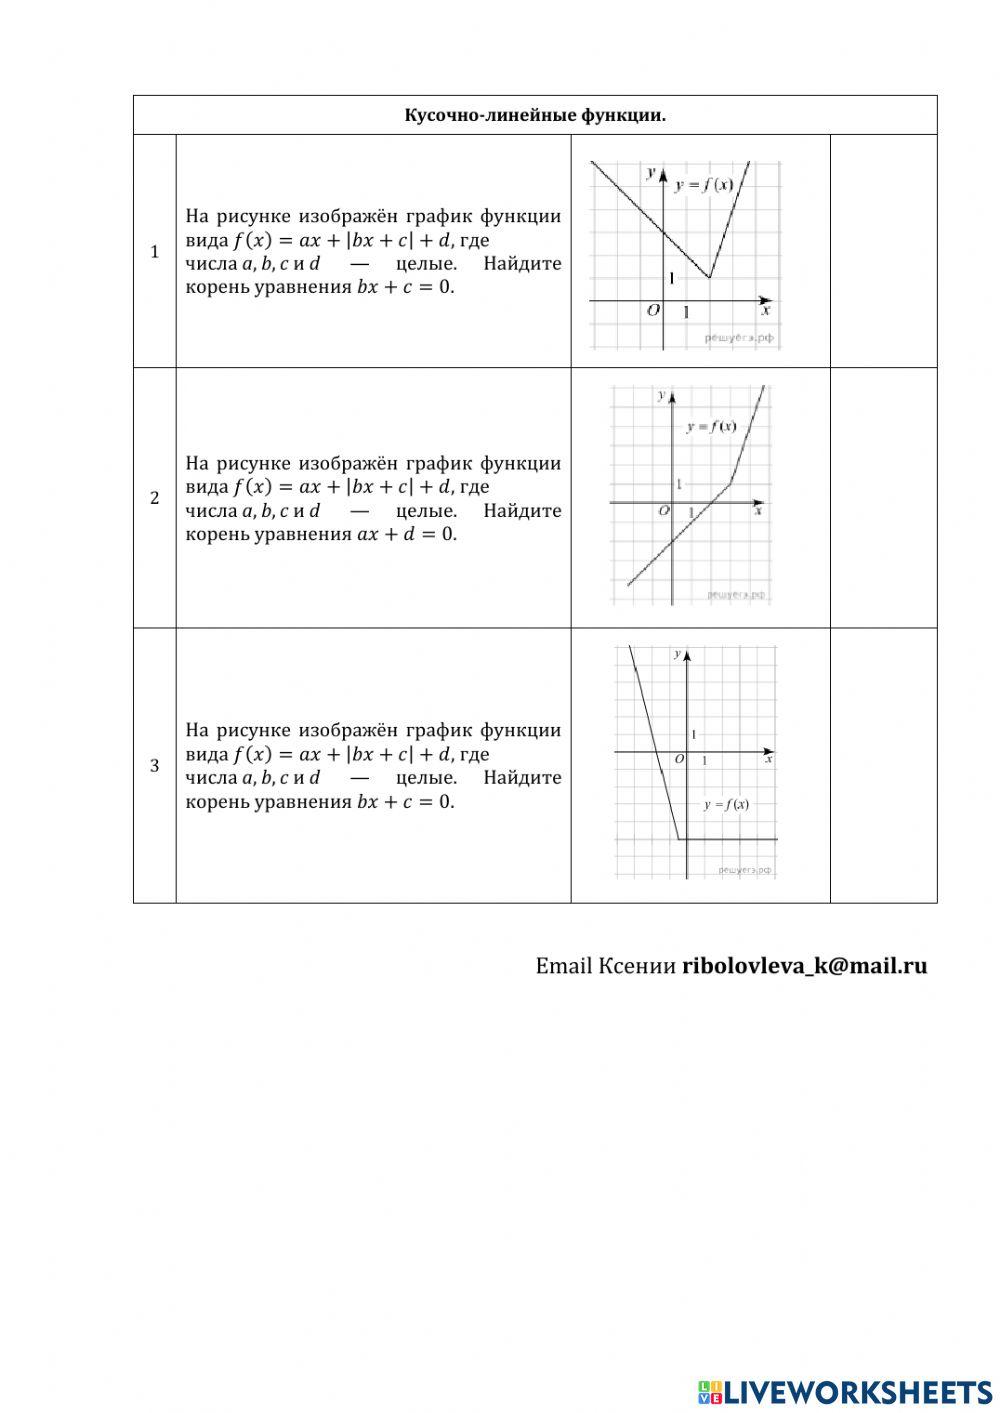 ДЗ №6: текстовые задачи и графики.